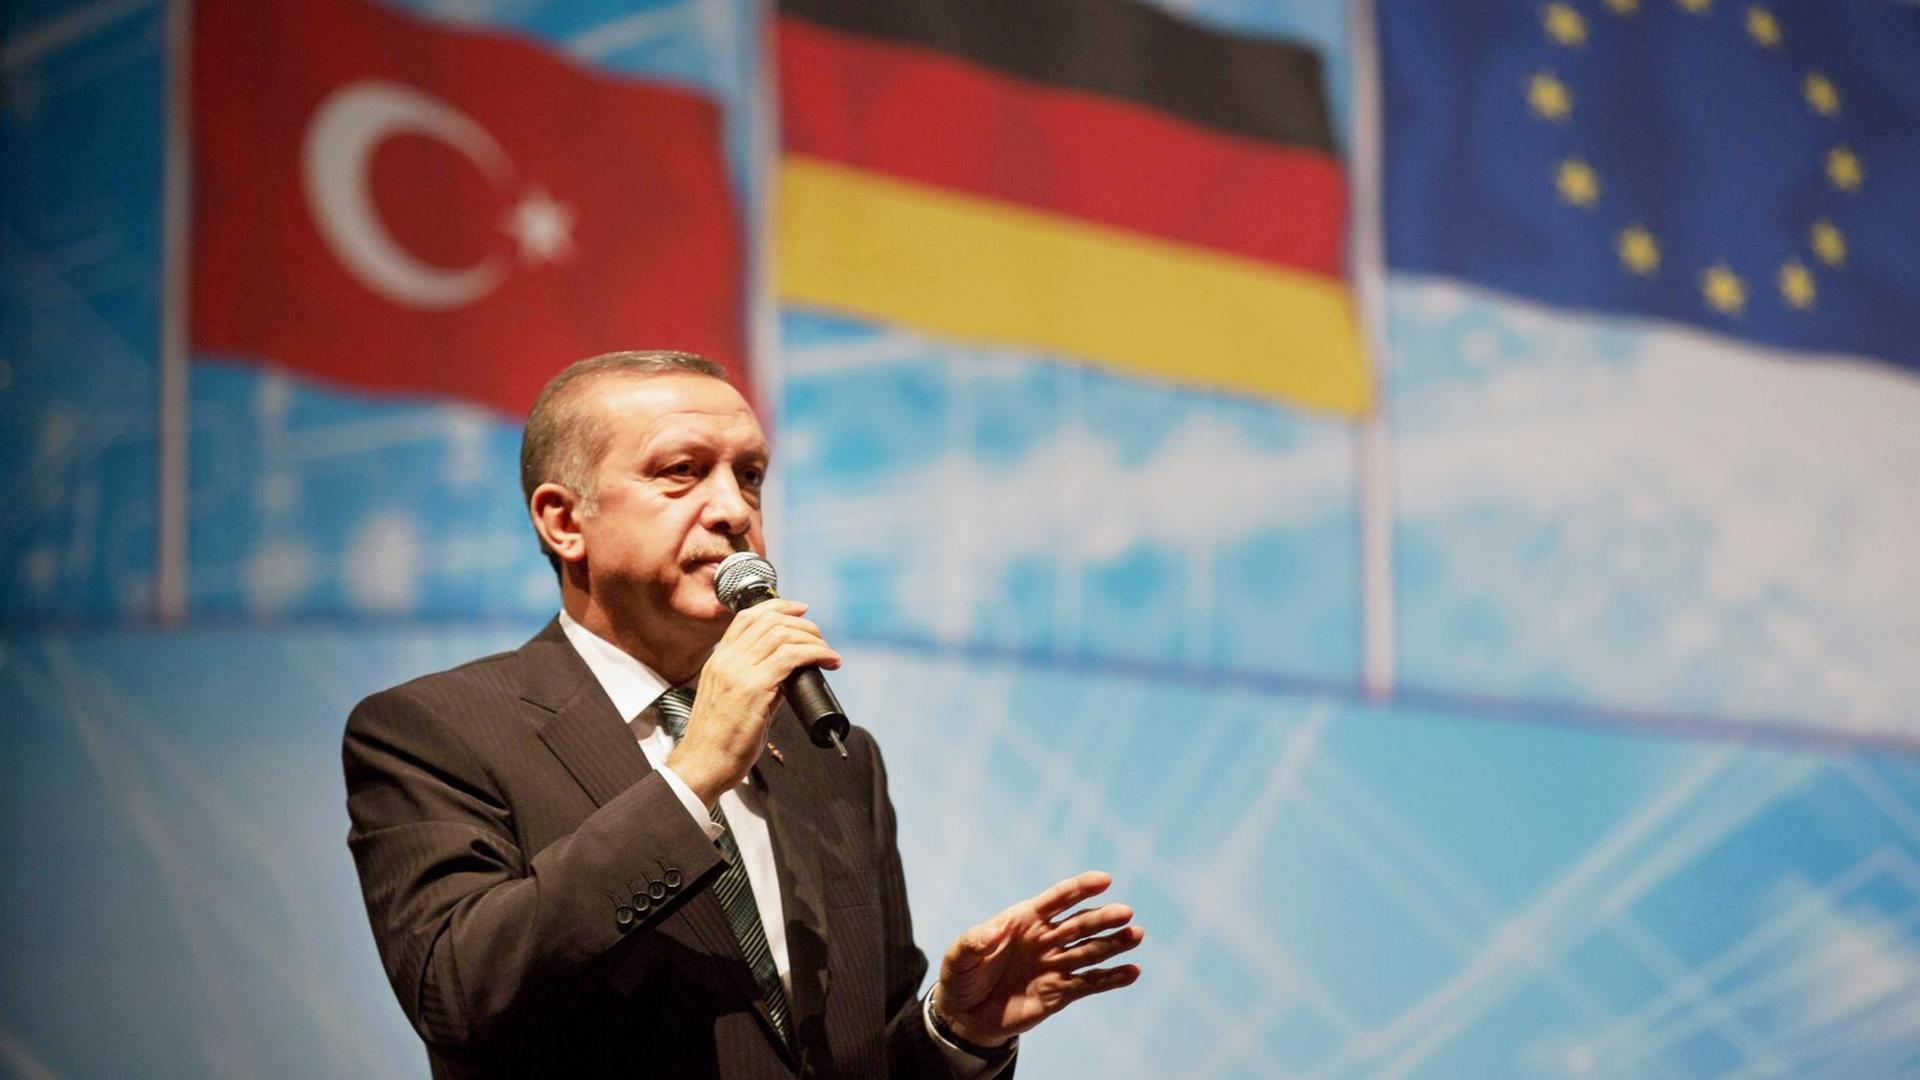 Auftritt des türkischen Ministerpräsident Recep Tayyip Erdogan im Tempodrom in Berlin. Der Premier sprach 2014 vor tausenden Anhängern auf der von den European Turkish Democrats (UETD) organisierten Veranstaltung